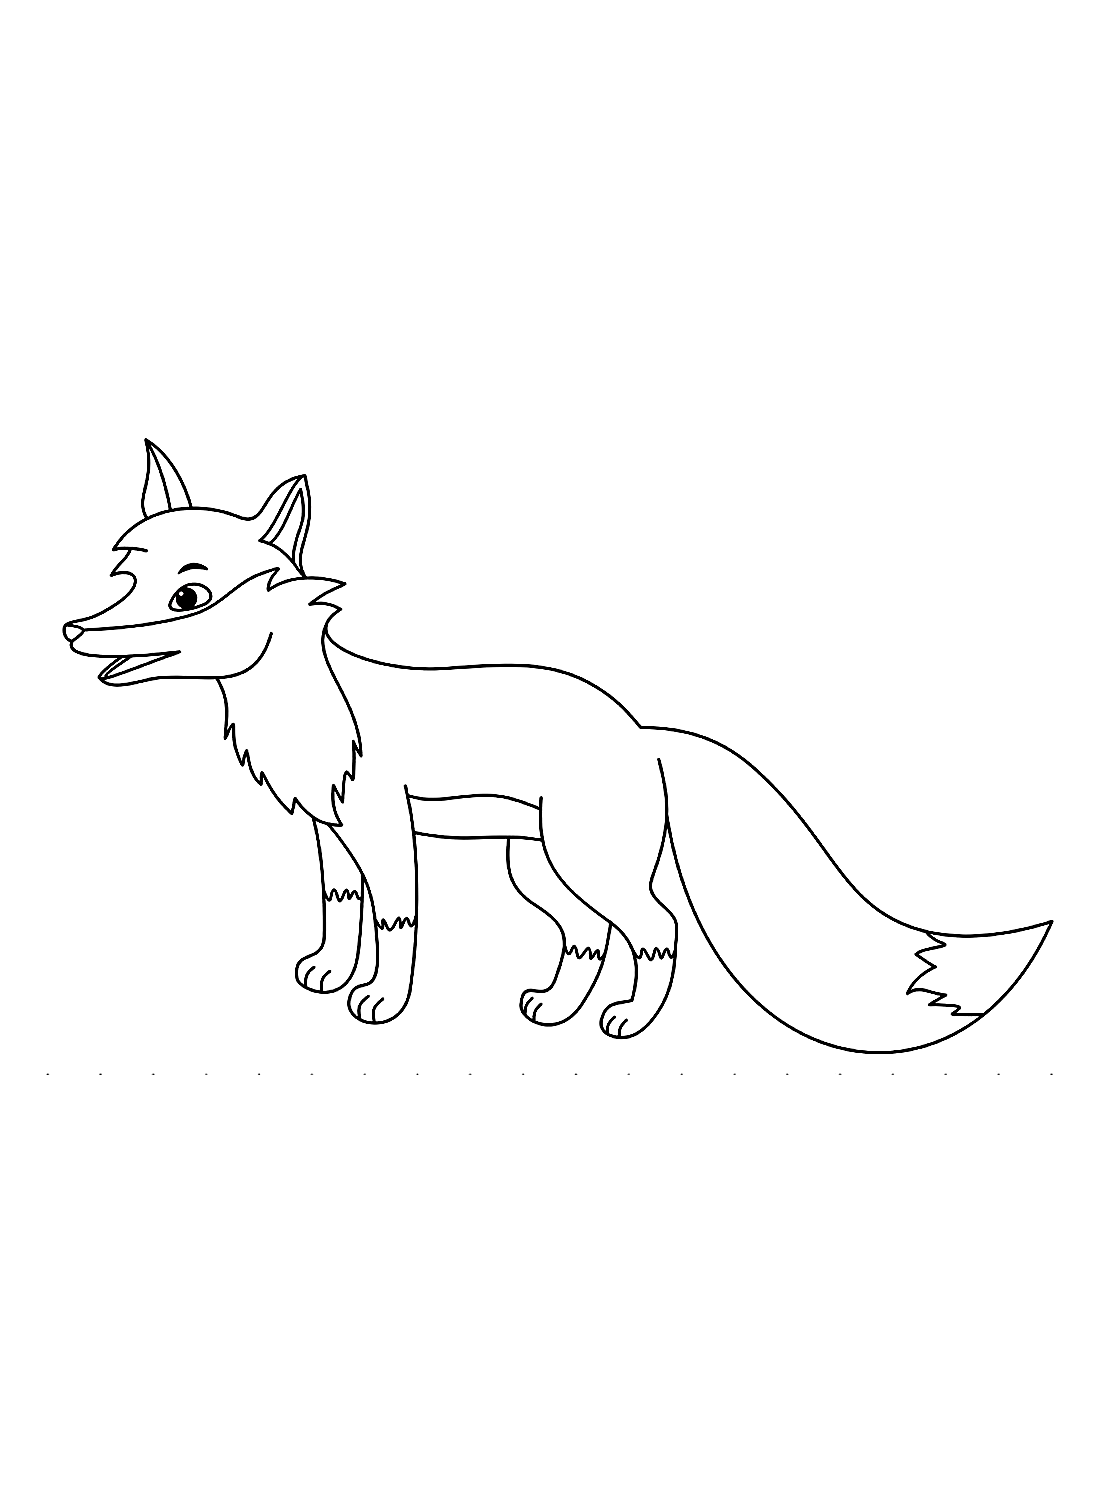 Hoja para colorear de zorro adulto de Fox